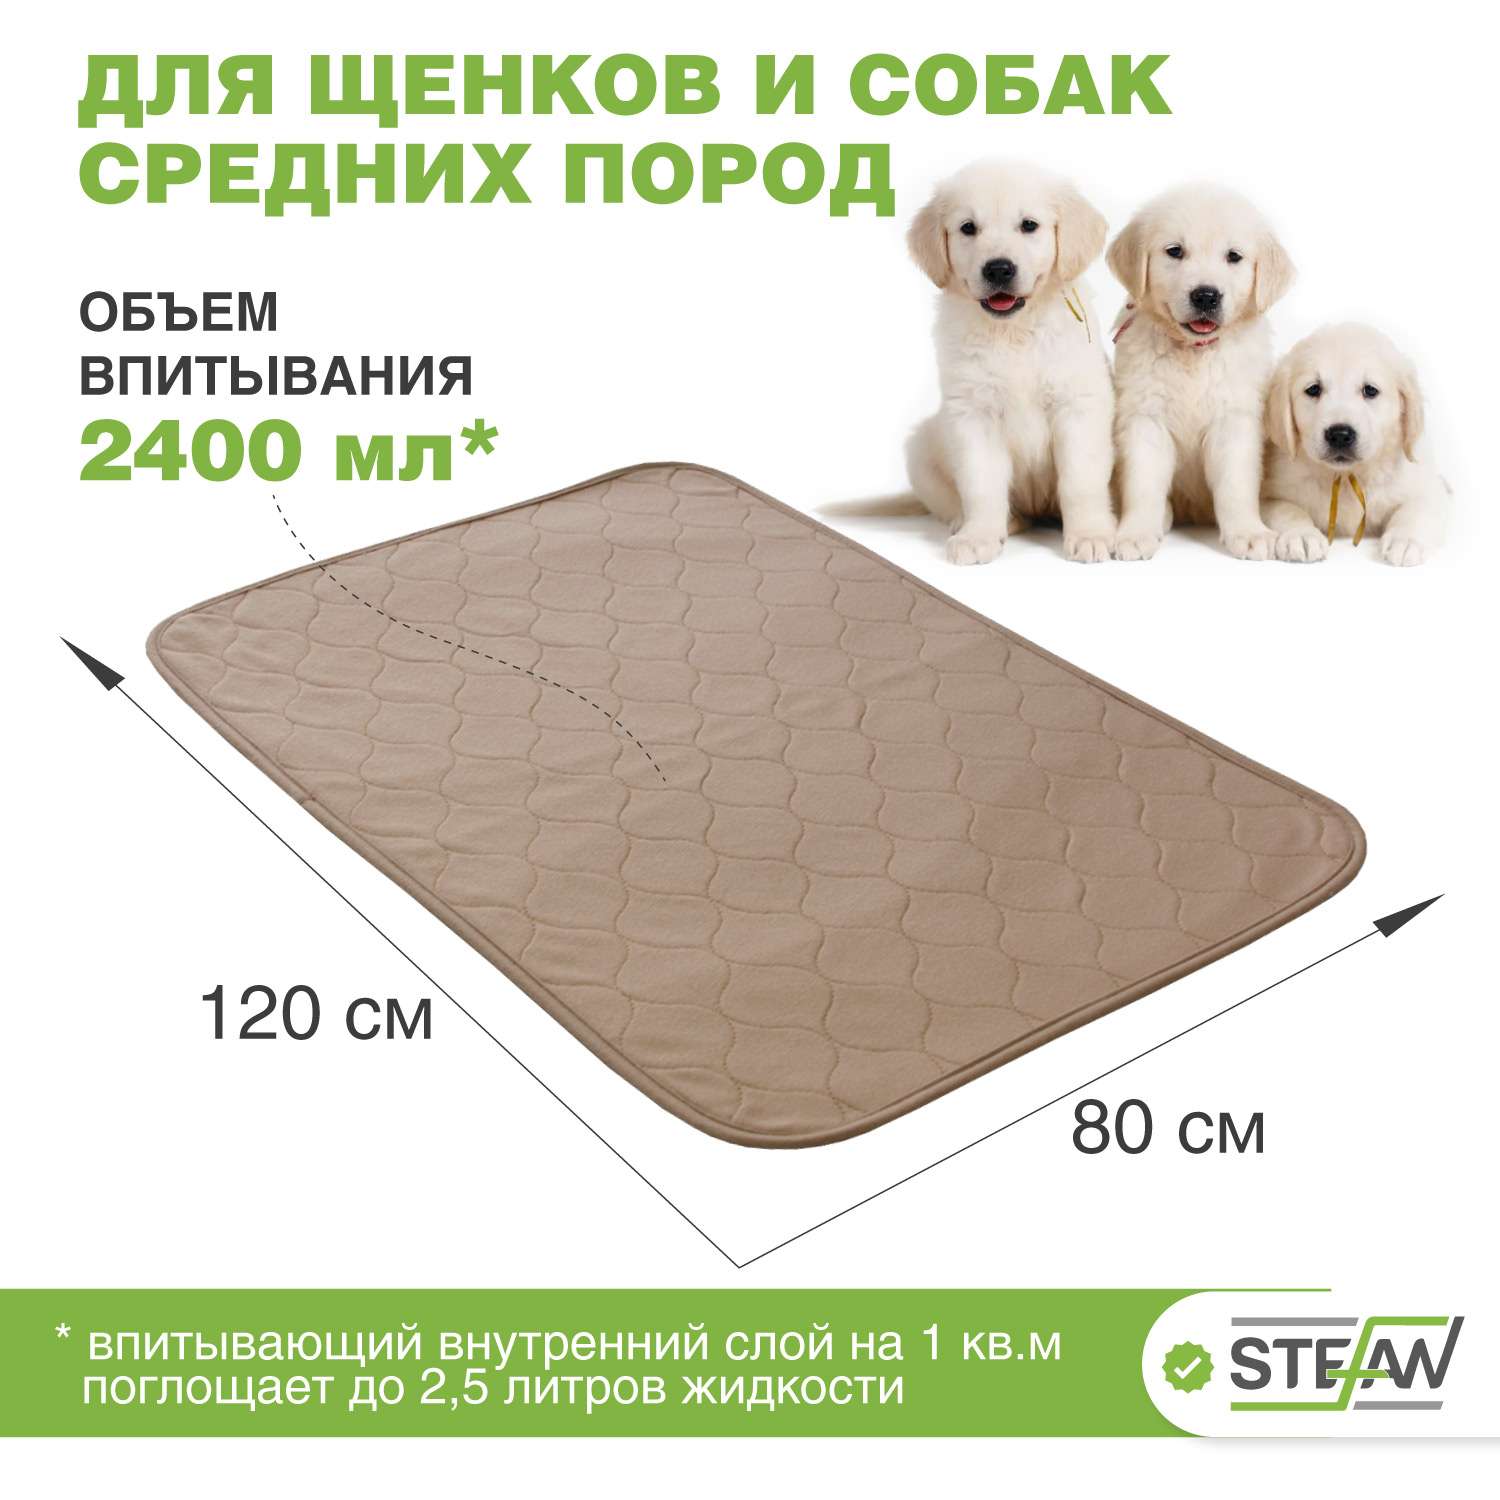 Пеленка для животных Stefan впитывающая многоразовая коричневая однотонная 80х120 см - фото 2